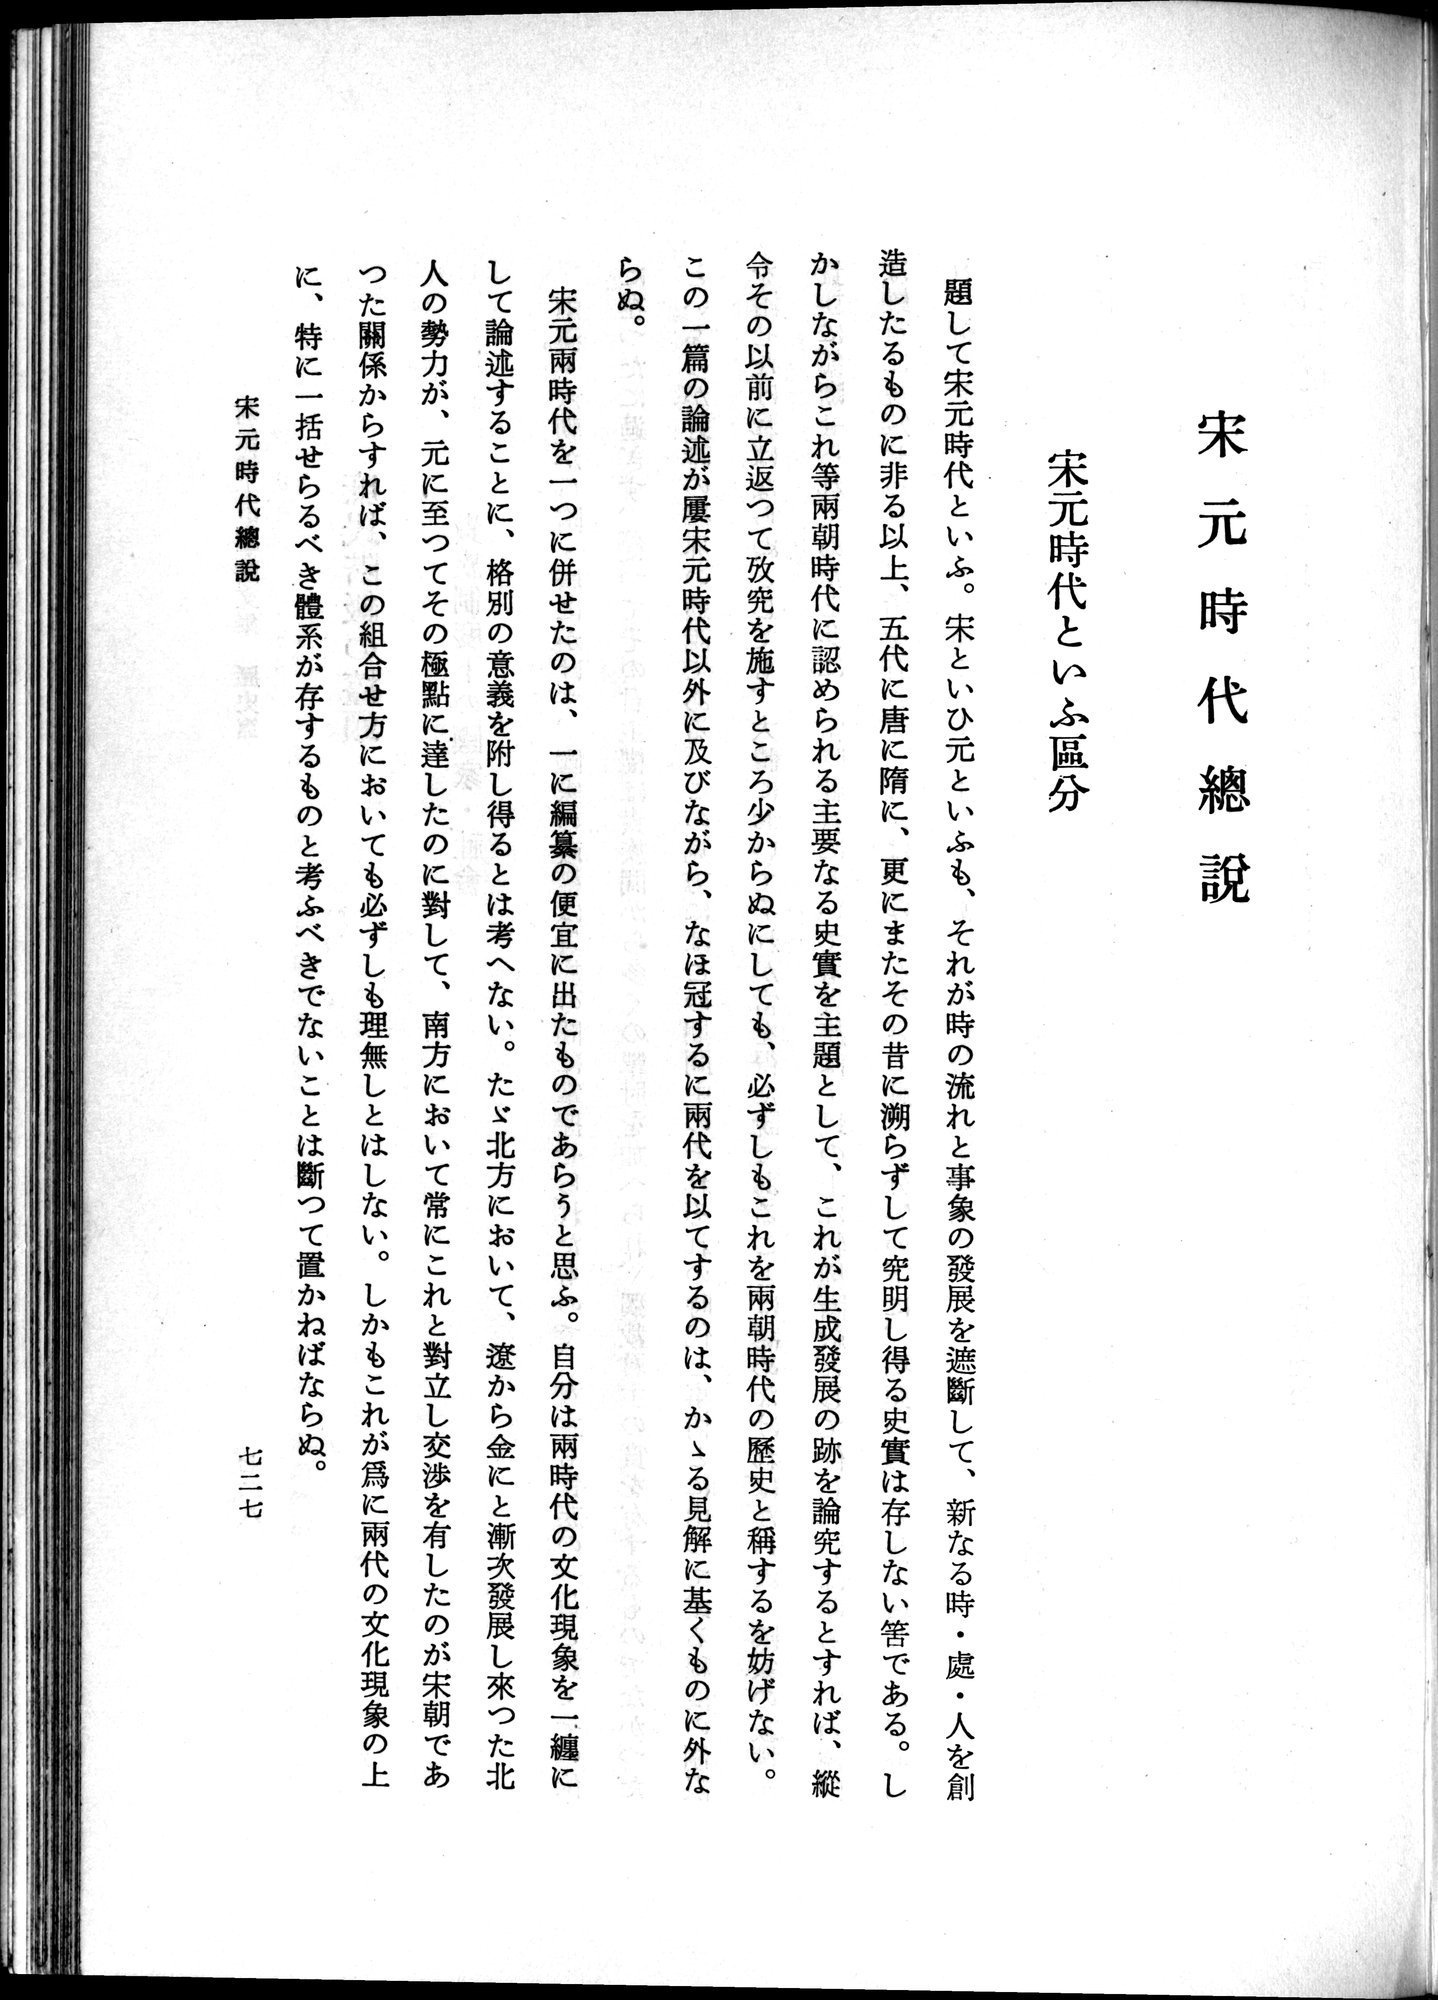 羽田博士史学論文集 : vol.1 / Page 765 (Grayscale High Resolution Image)